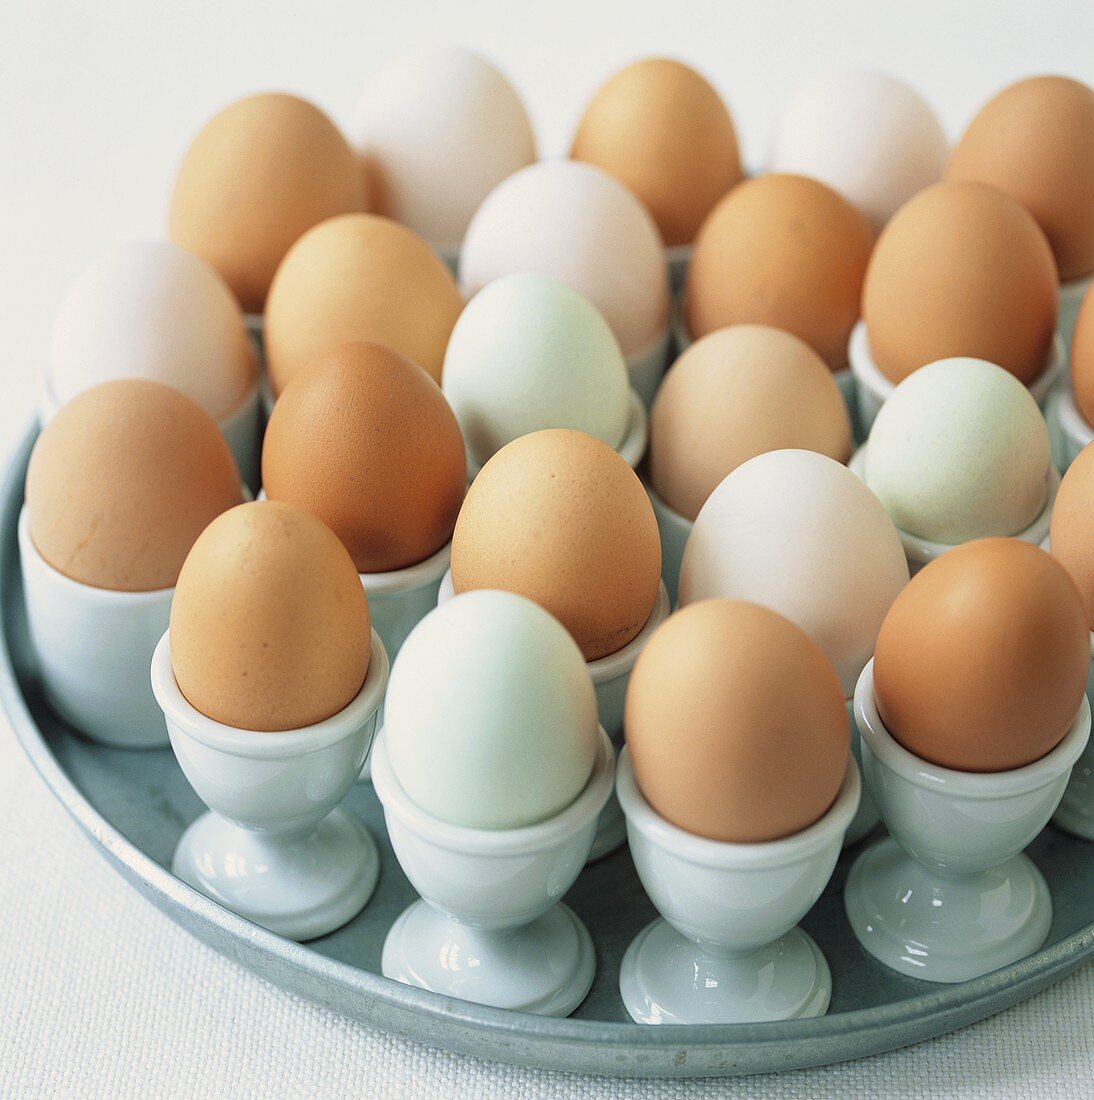 Various eggs in eggcups